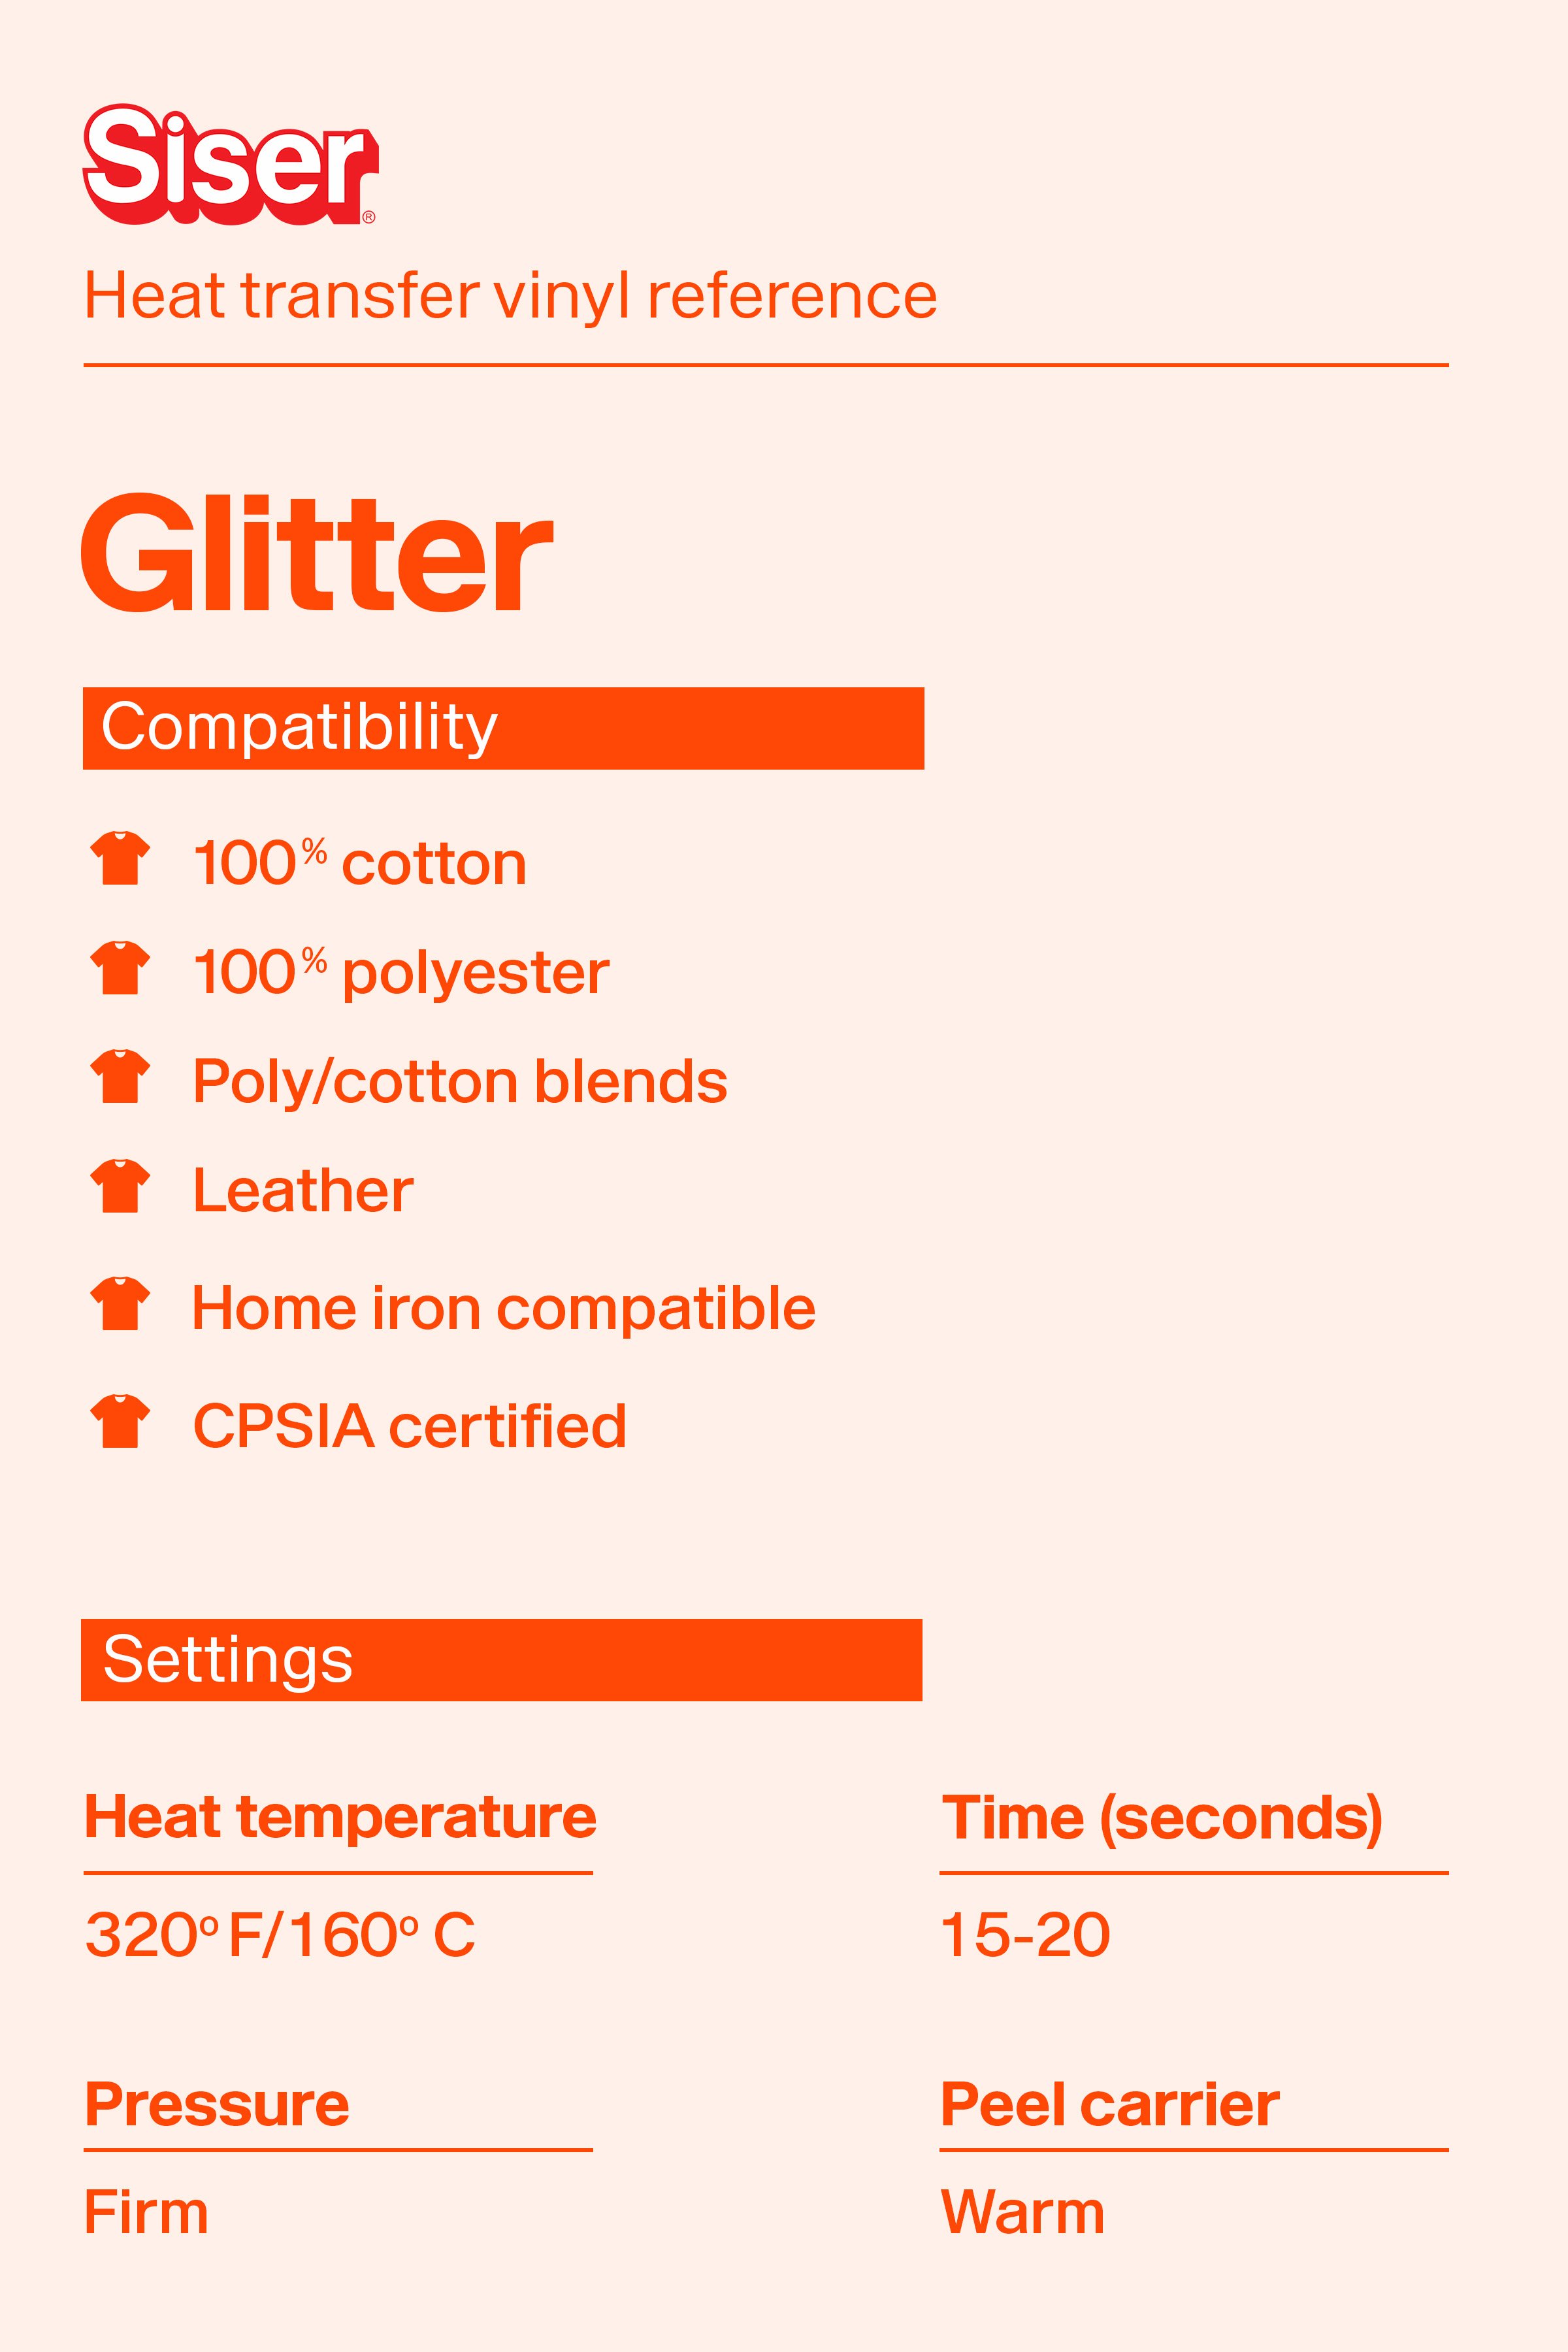 Siser Glitter 20 Heat Transfer Vinyl - SPSI Inc.